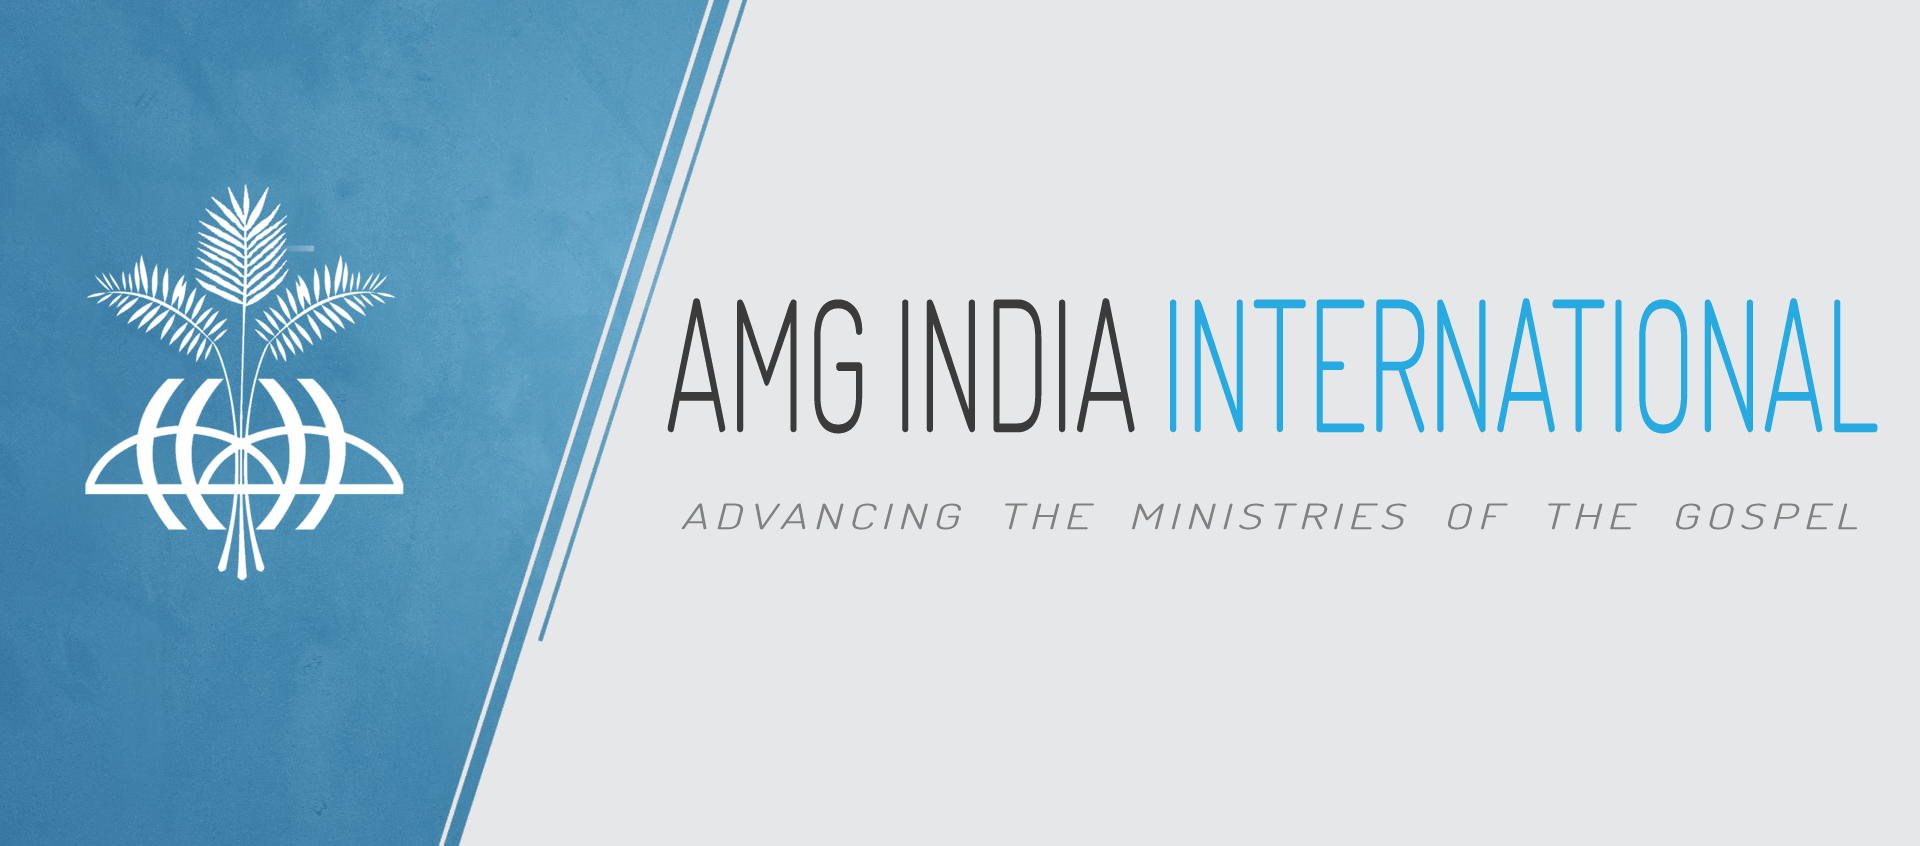 AMG International Logo - AMG INDIA INTERNATIONAL - Home